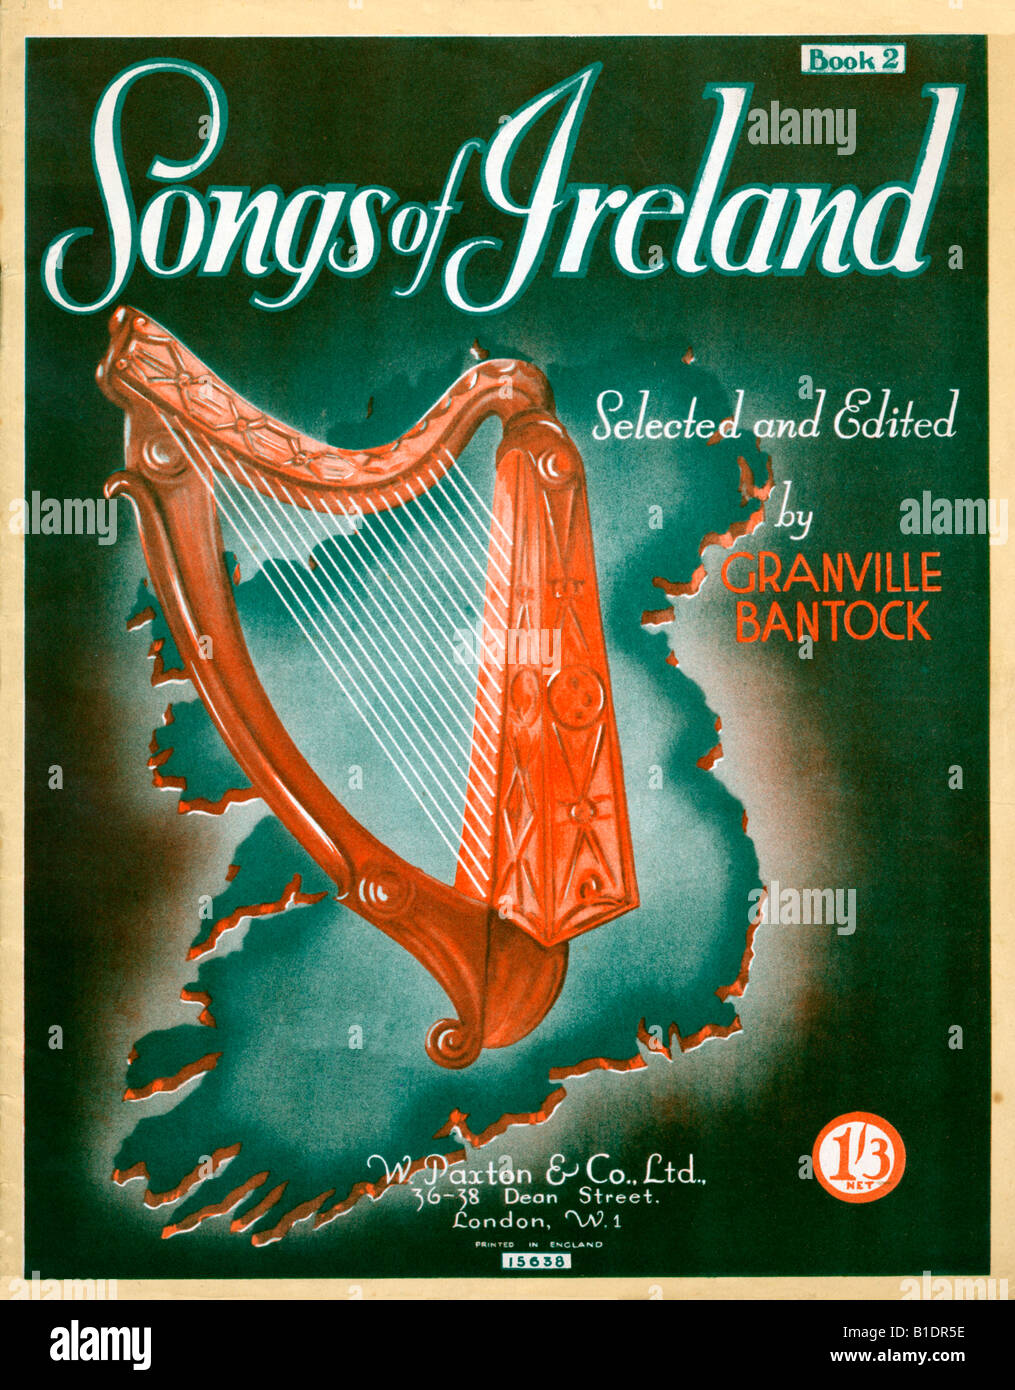 Songs of Ireland 1940er Jahre Musik Blatt Abdeckung für eine Sammlung der beliebtesten Songs von der grünen Insel Stockfoto